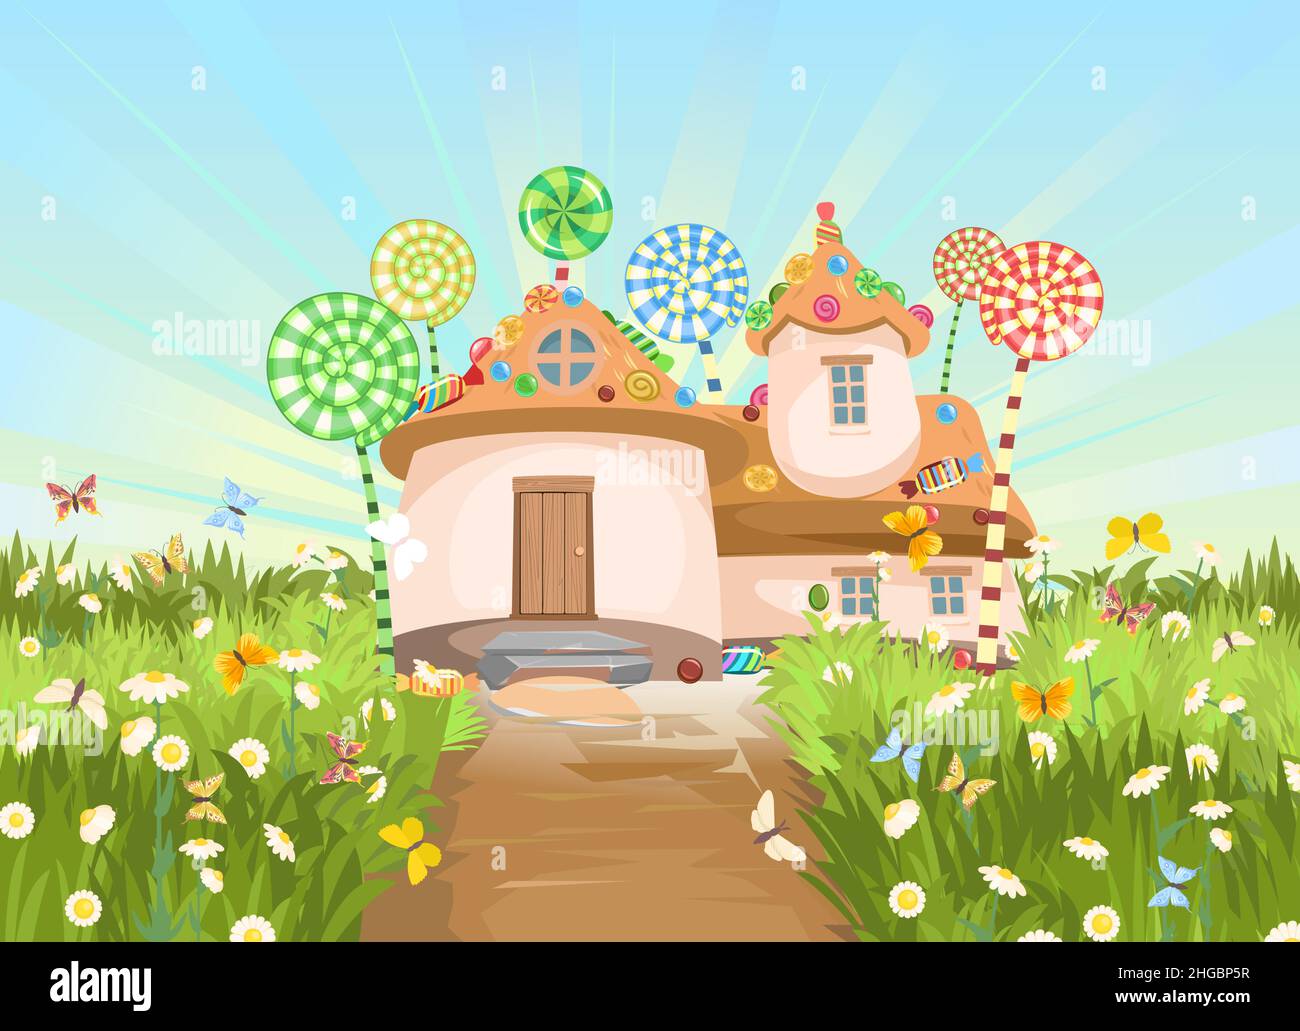 Süßigkeitenhütte auf Wiese mit Straße. Süßes Karamell-Feenhaus. Sommer niedliche Landschaft. Illustration im Cartoon-Stil flache Design. Bild für Kinder Stock Vektor